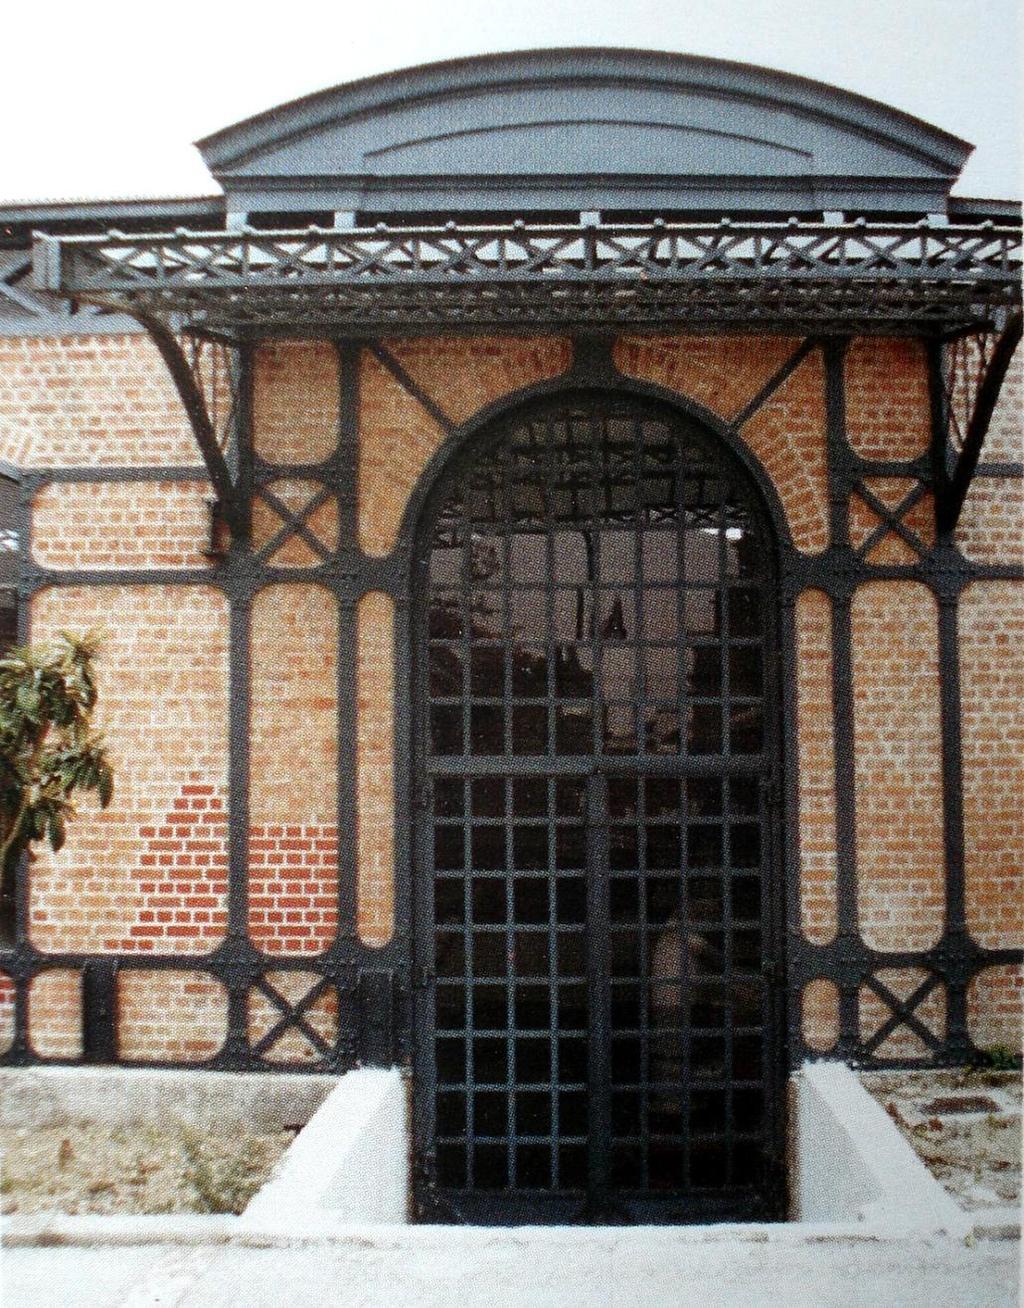 Κεντρικό αντλιοστάσιο της Οθωμανικής Εταιρείας Υδάτων στη Θεσσαλονίκη: Μουσείο Ύδρευσης Θεσσαλονίκης Μοναδικό για τα